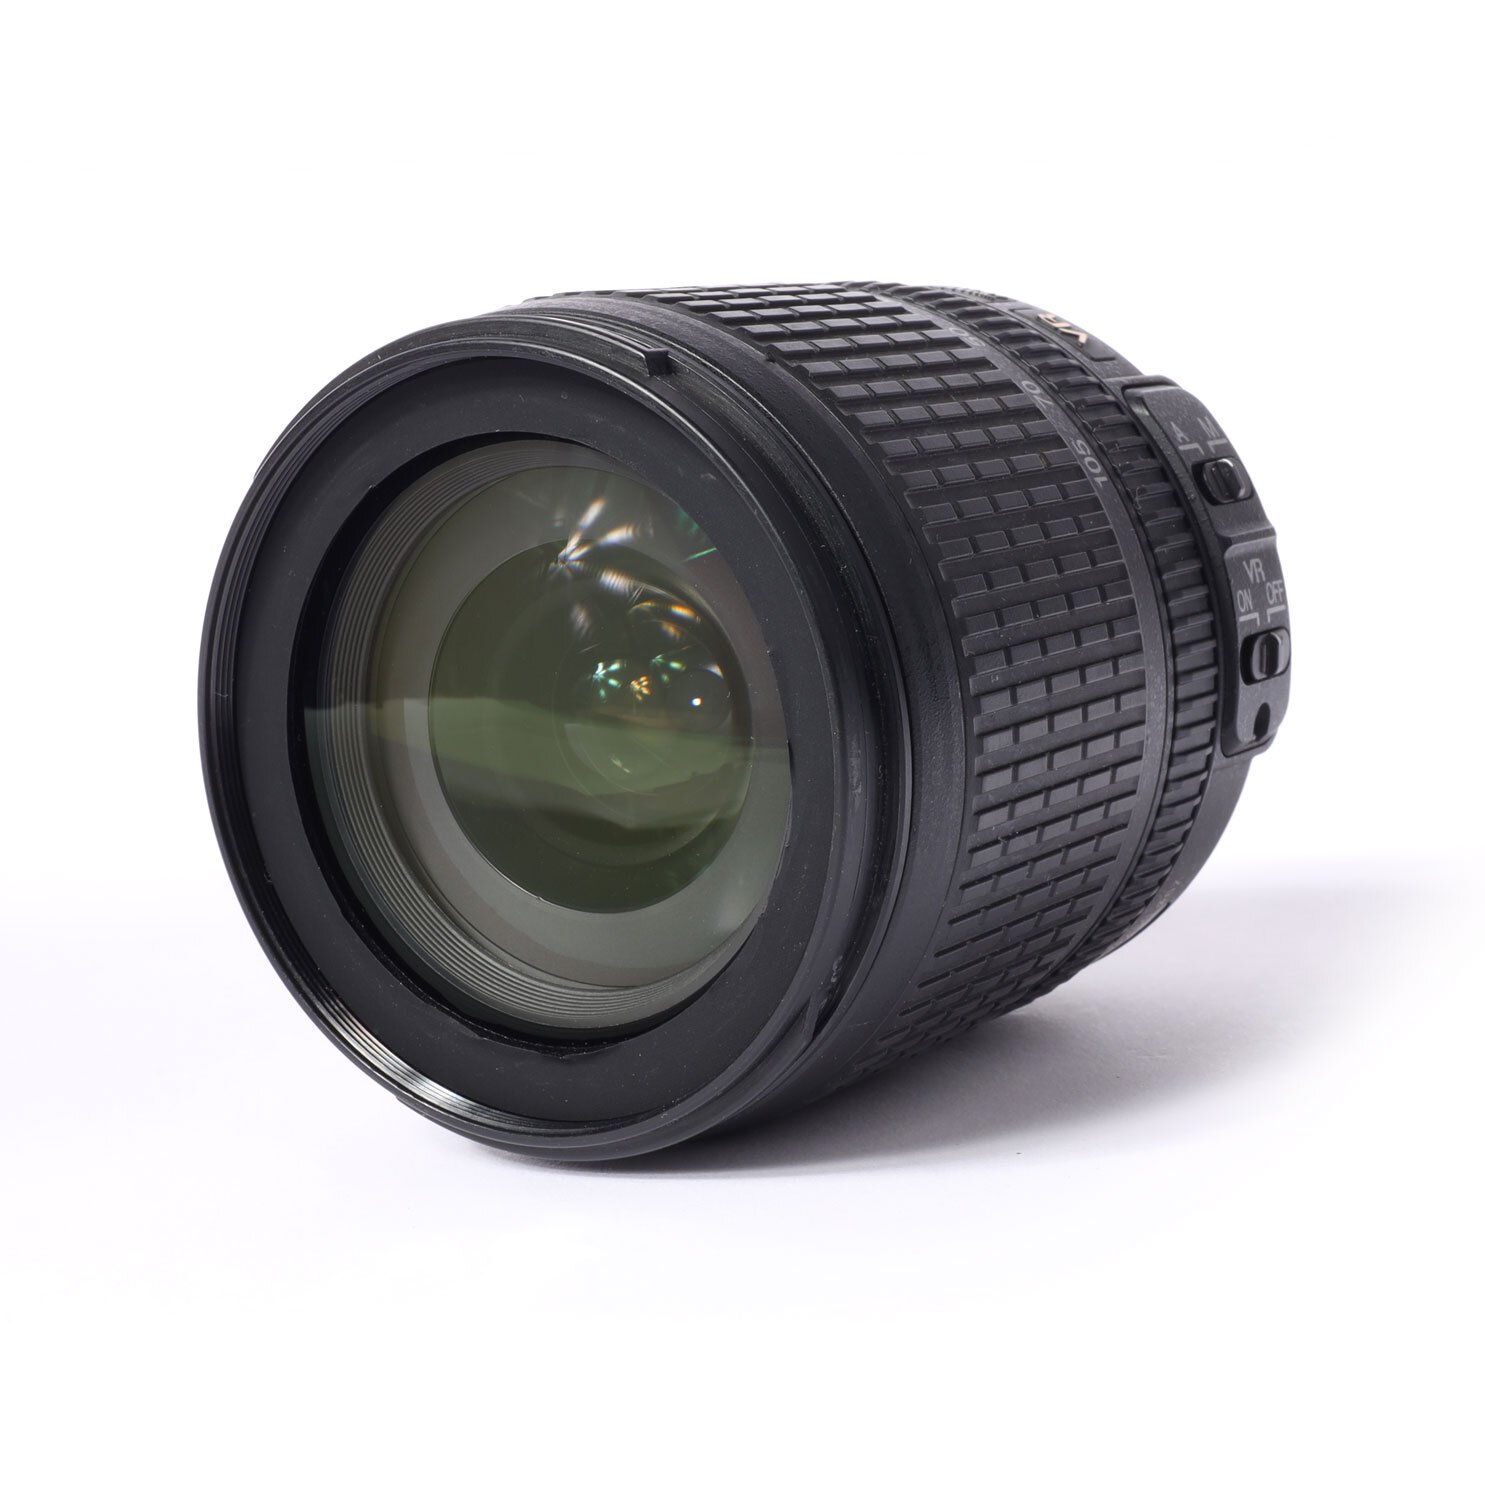 Nikon DX Nikkor 3.5-5.6G/18-105mm ED VR